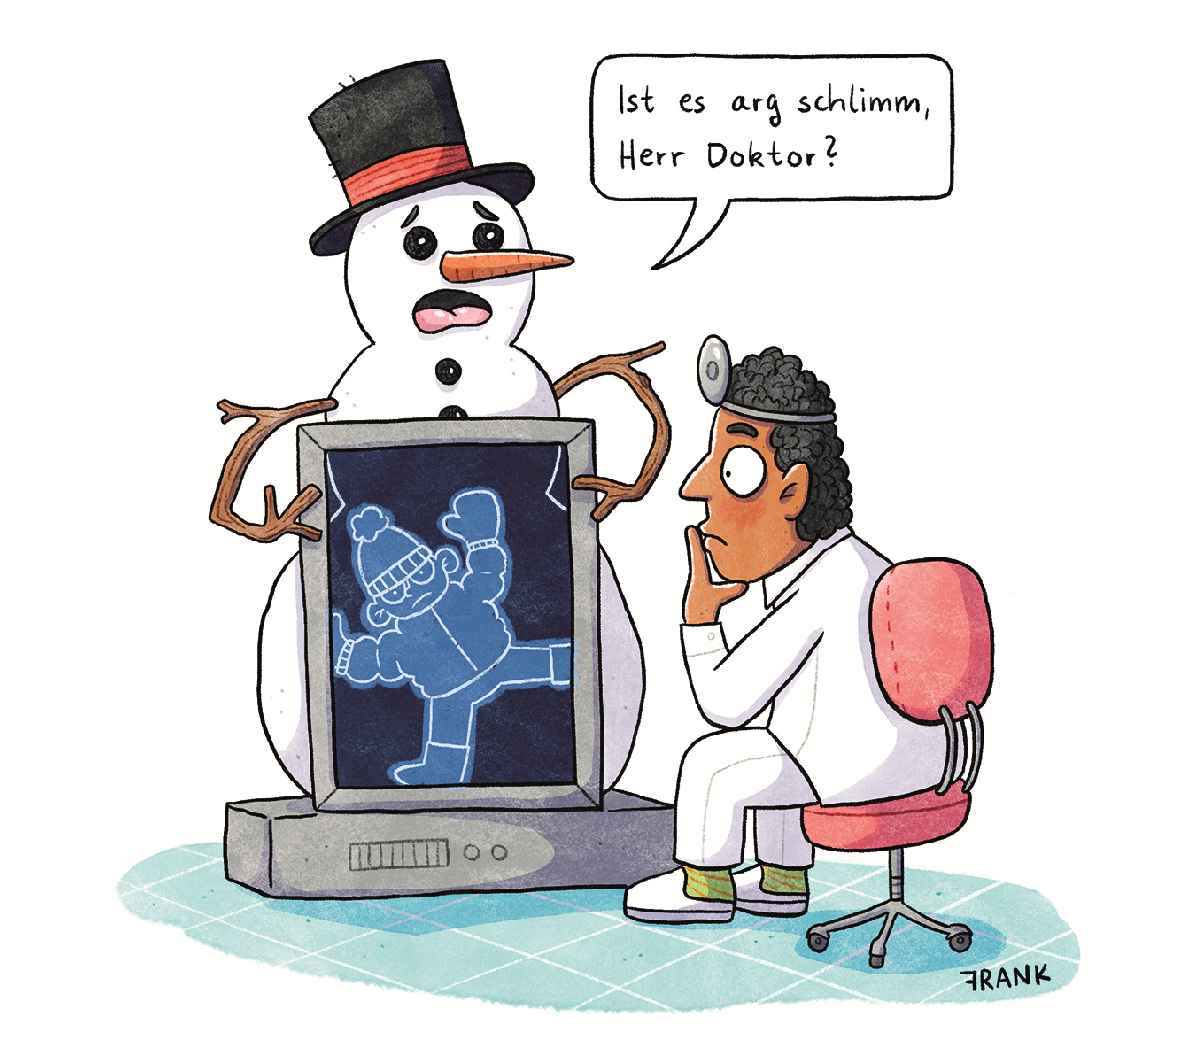 Eingerollt: Zeichnung von Schneemann beim Arzt, im Röntgenbild des Bauches sieht man einen Schlittschuhläufer